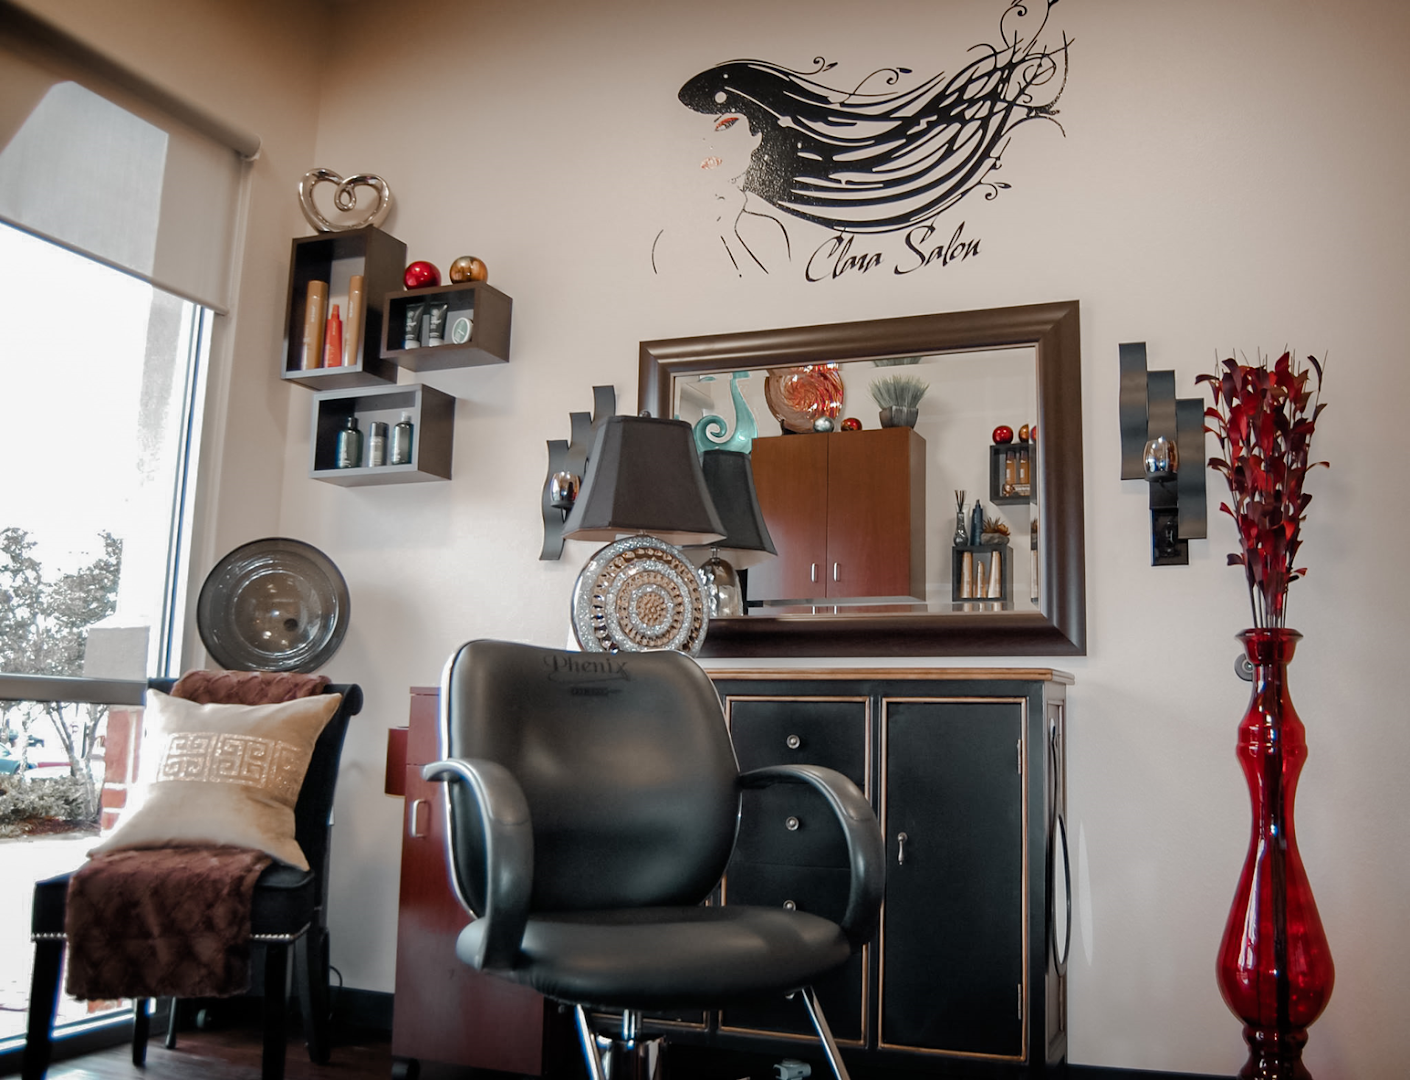 Kathy Adams Salon | Hair salon in Buford, GA